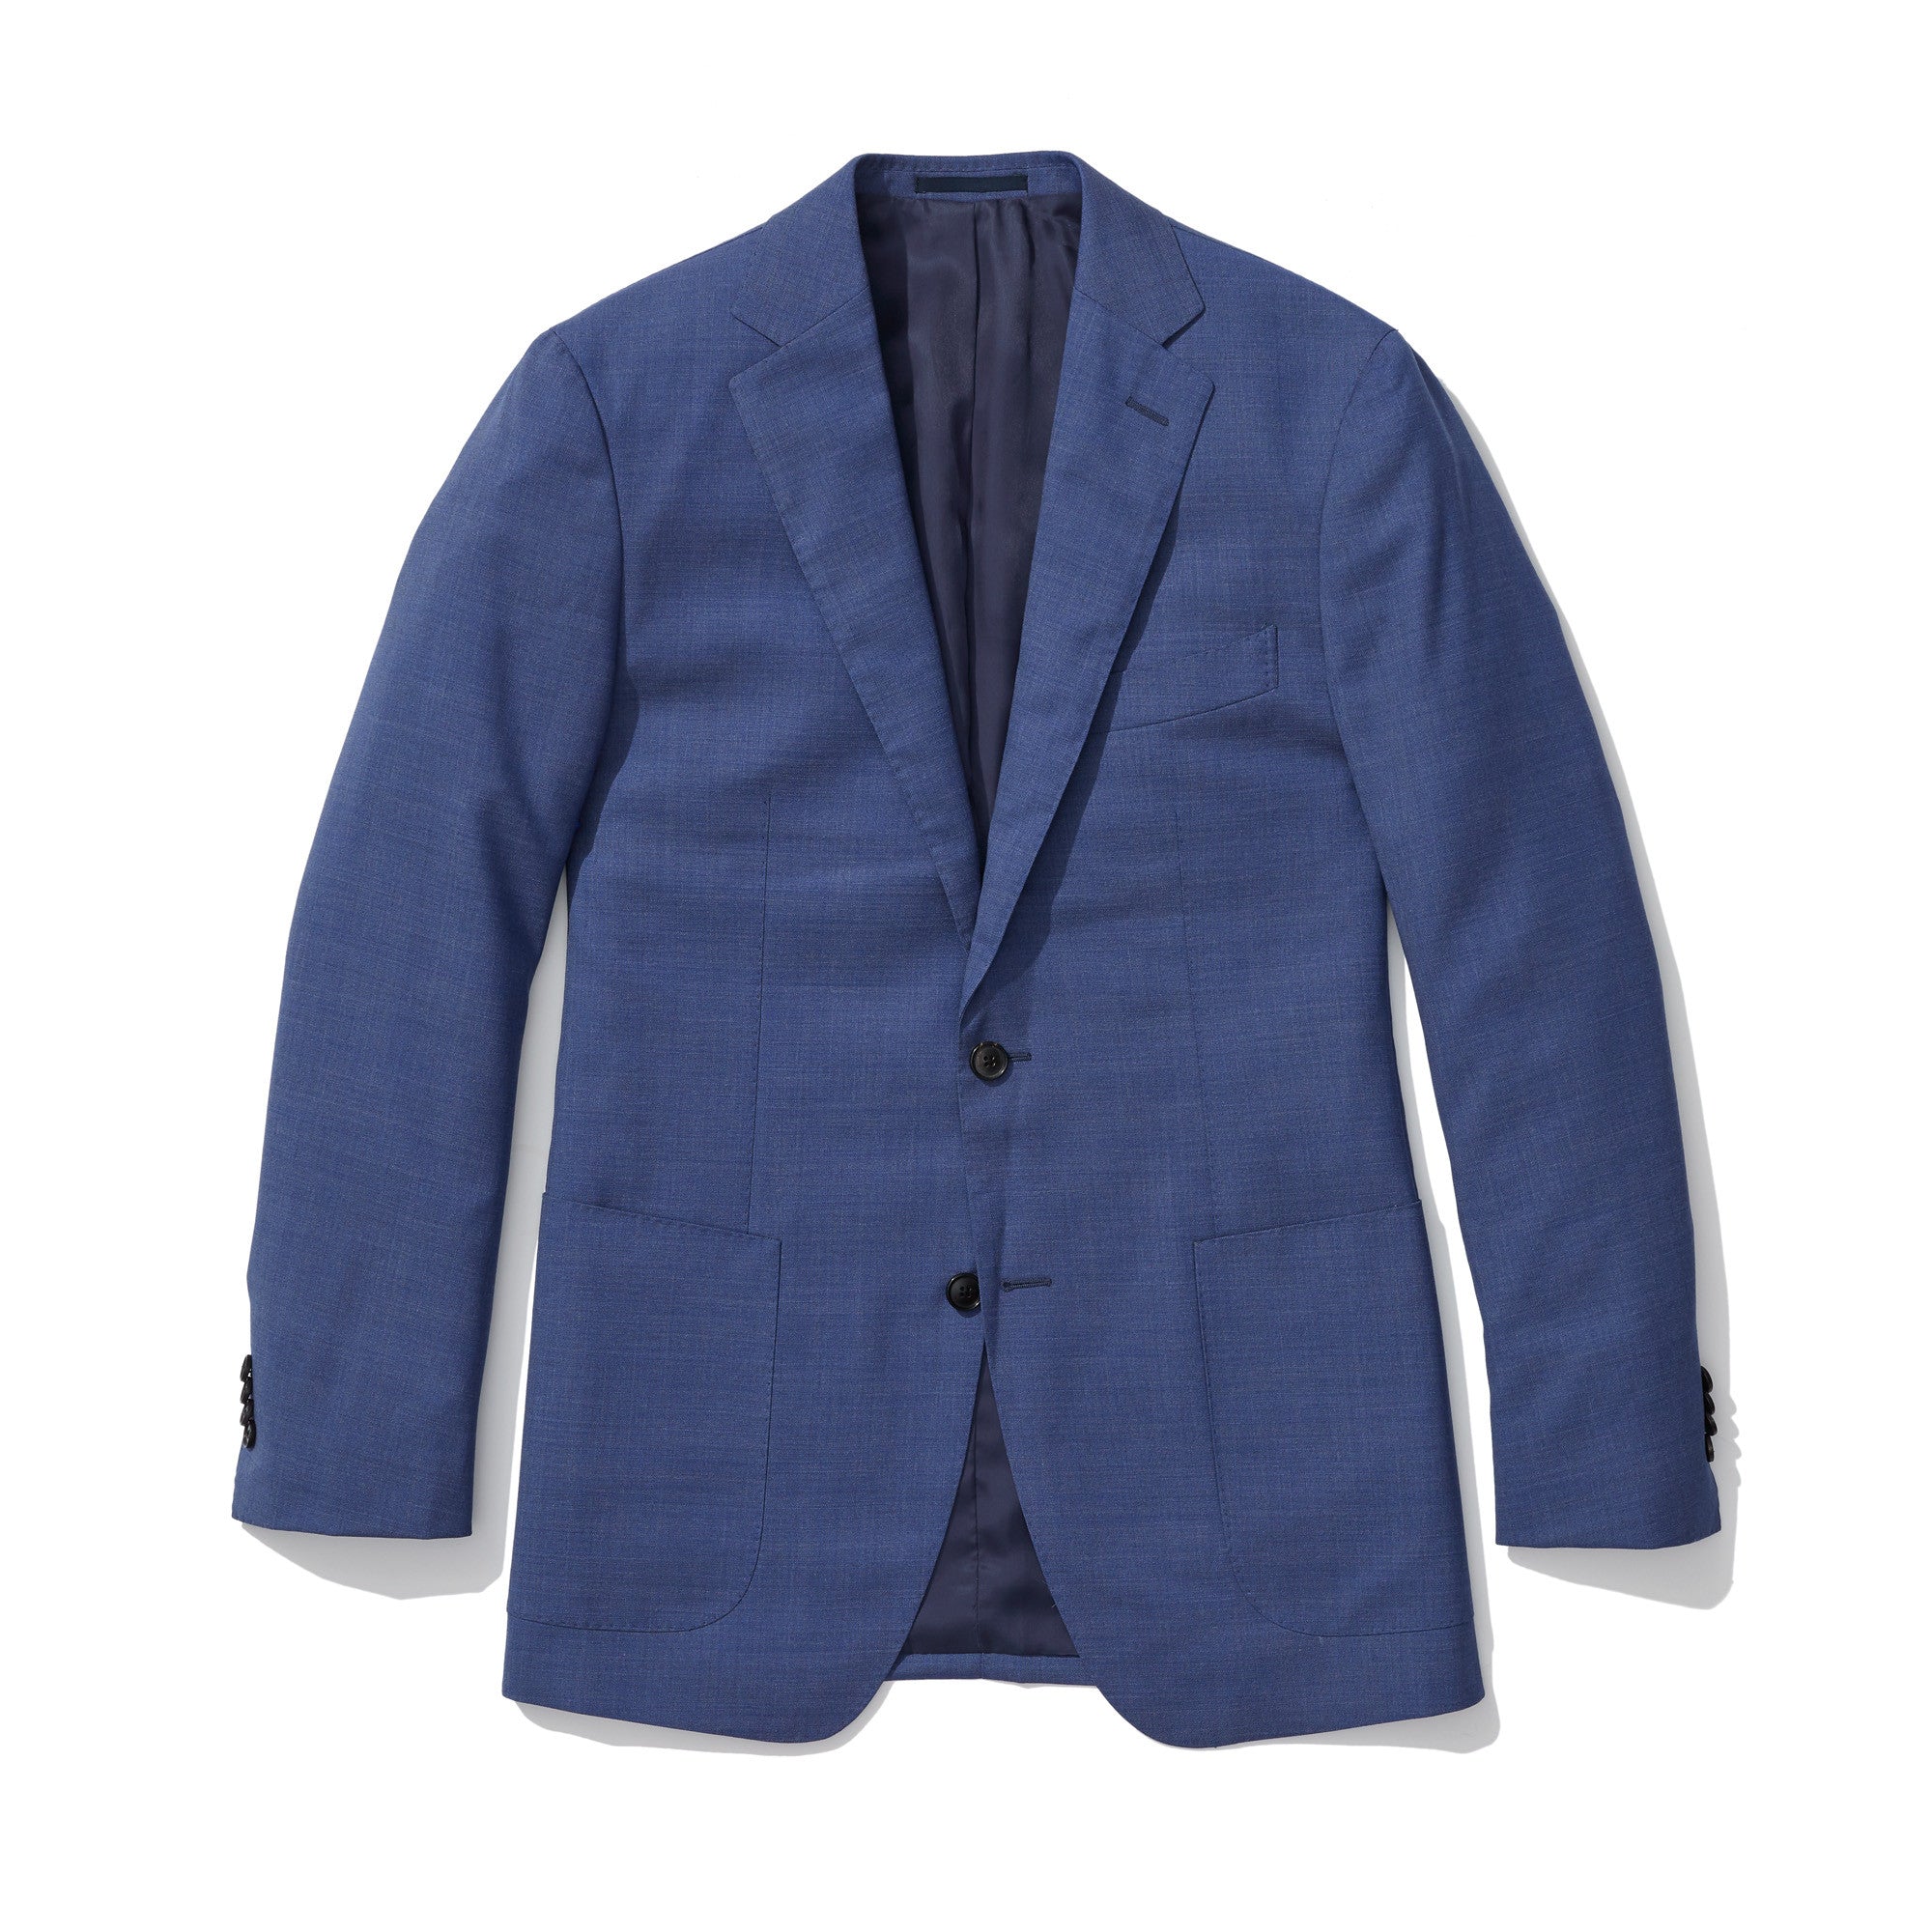 Harrison - Blue Patch Pocket Italian Wool Suit - Jomers